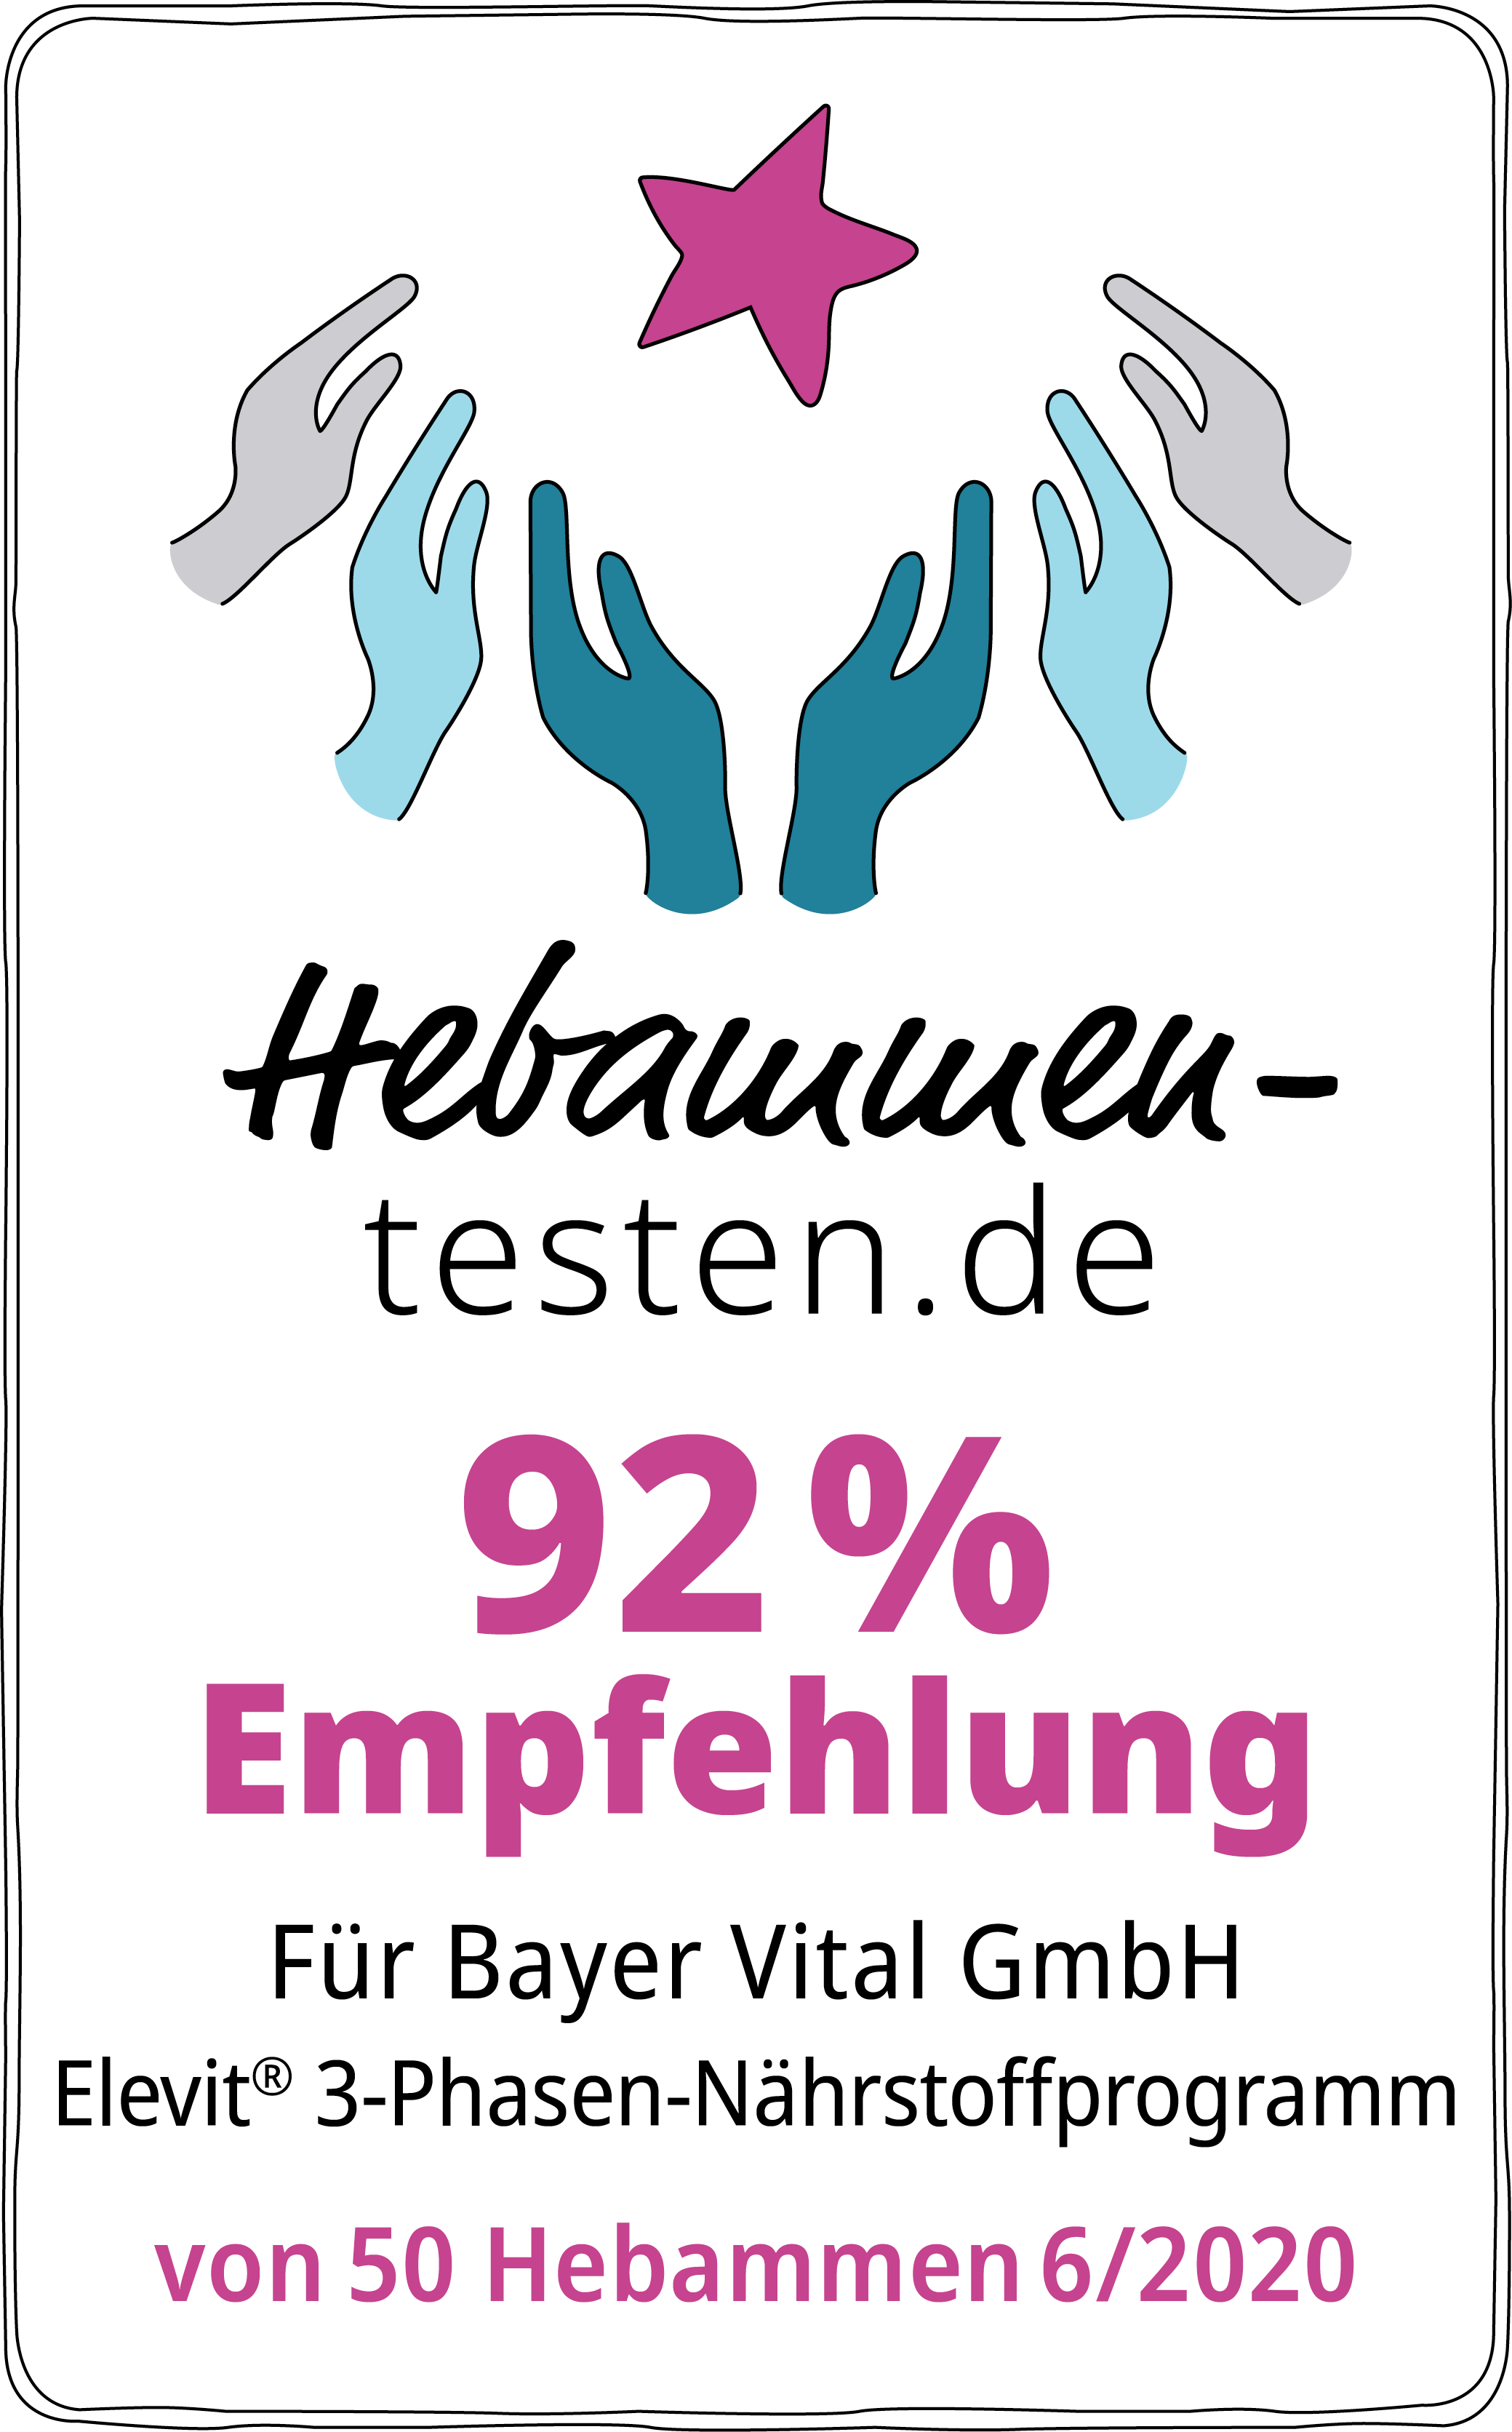 Hebammen-testen.de Siegel für Bayer Vital GmbH Elevit 3-Phasen-Nährstoffprogramm 92 % Empfehlung von 50 Hebammen im Juni 2020 getestet.